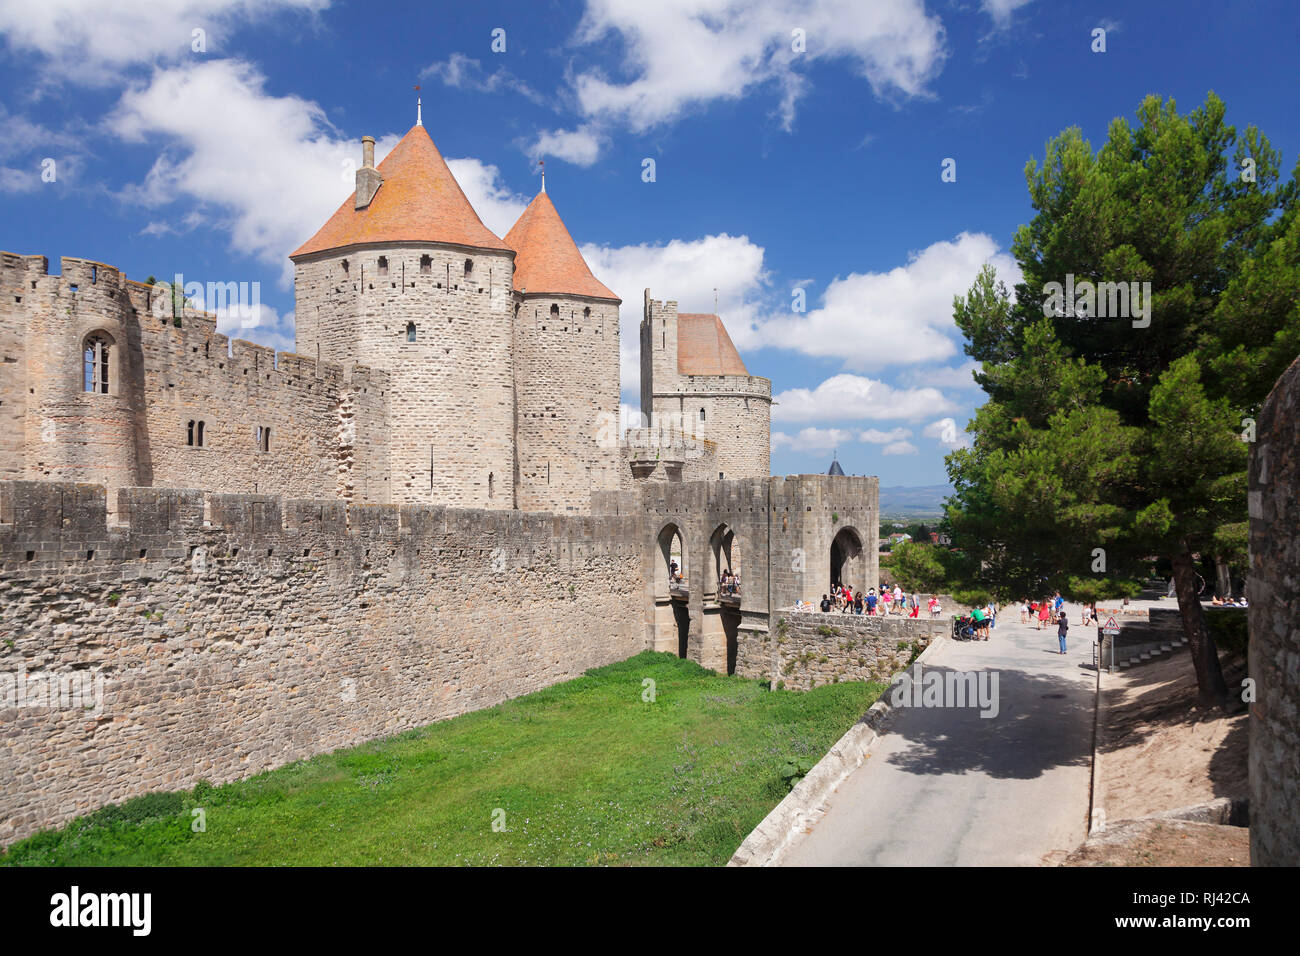 La Cite, mittelalterliche Festungsstadt Carcassonne, la UNESCO Weltkulturerbe, Languedoc-Roussillon, Südfrankreich, Frankreich Foto de stock